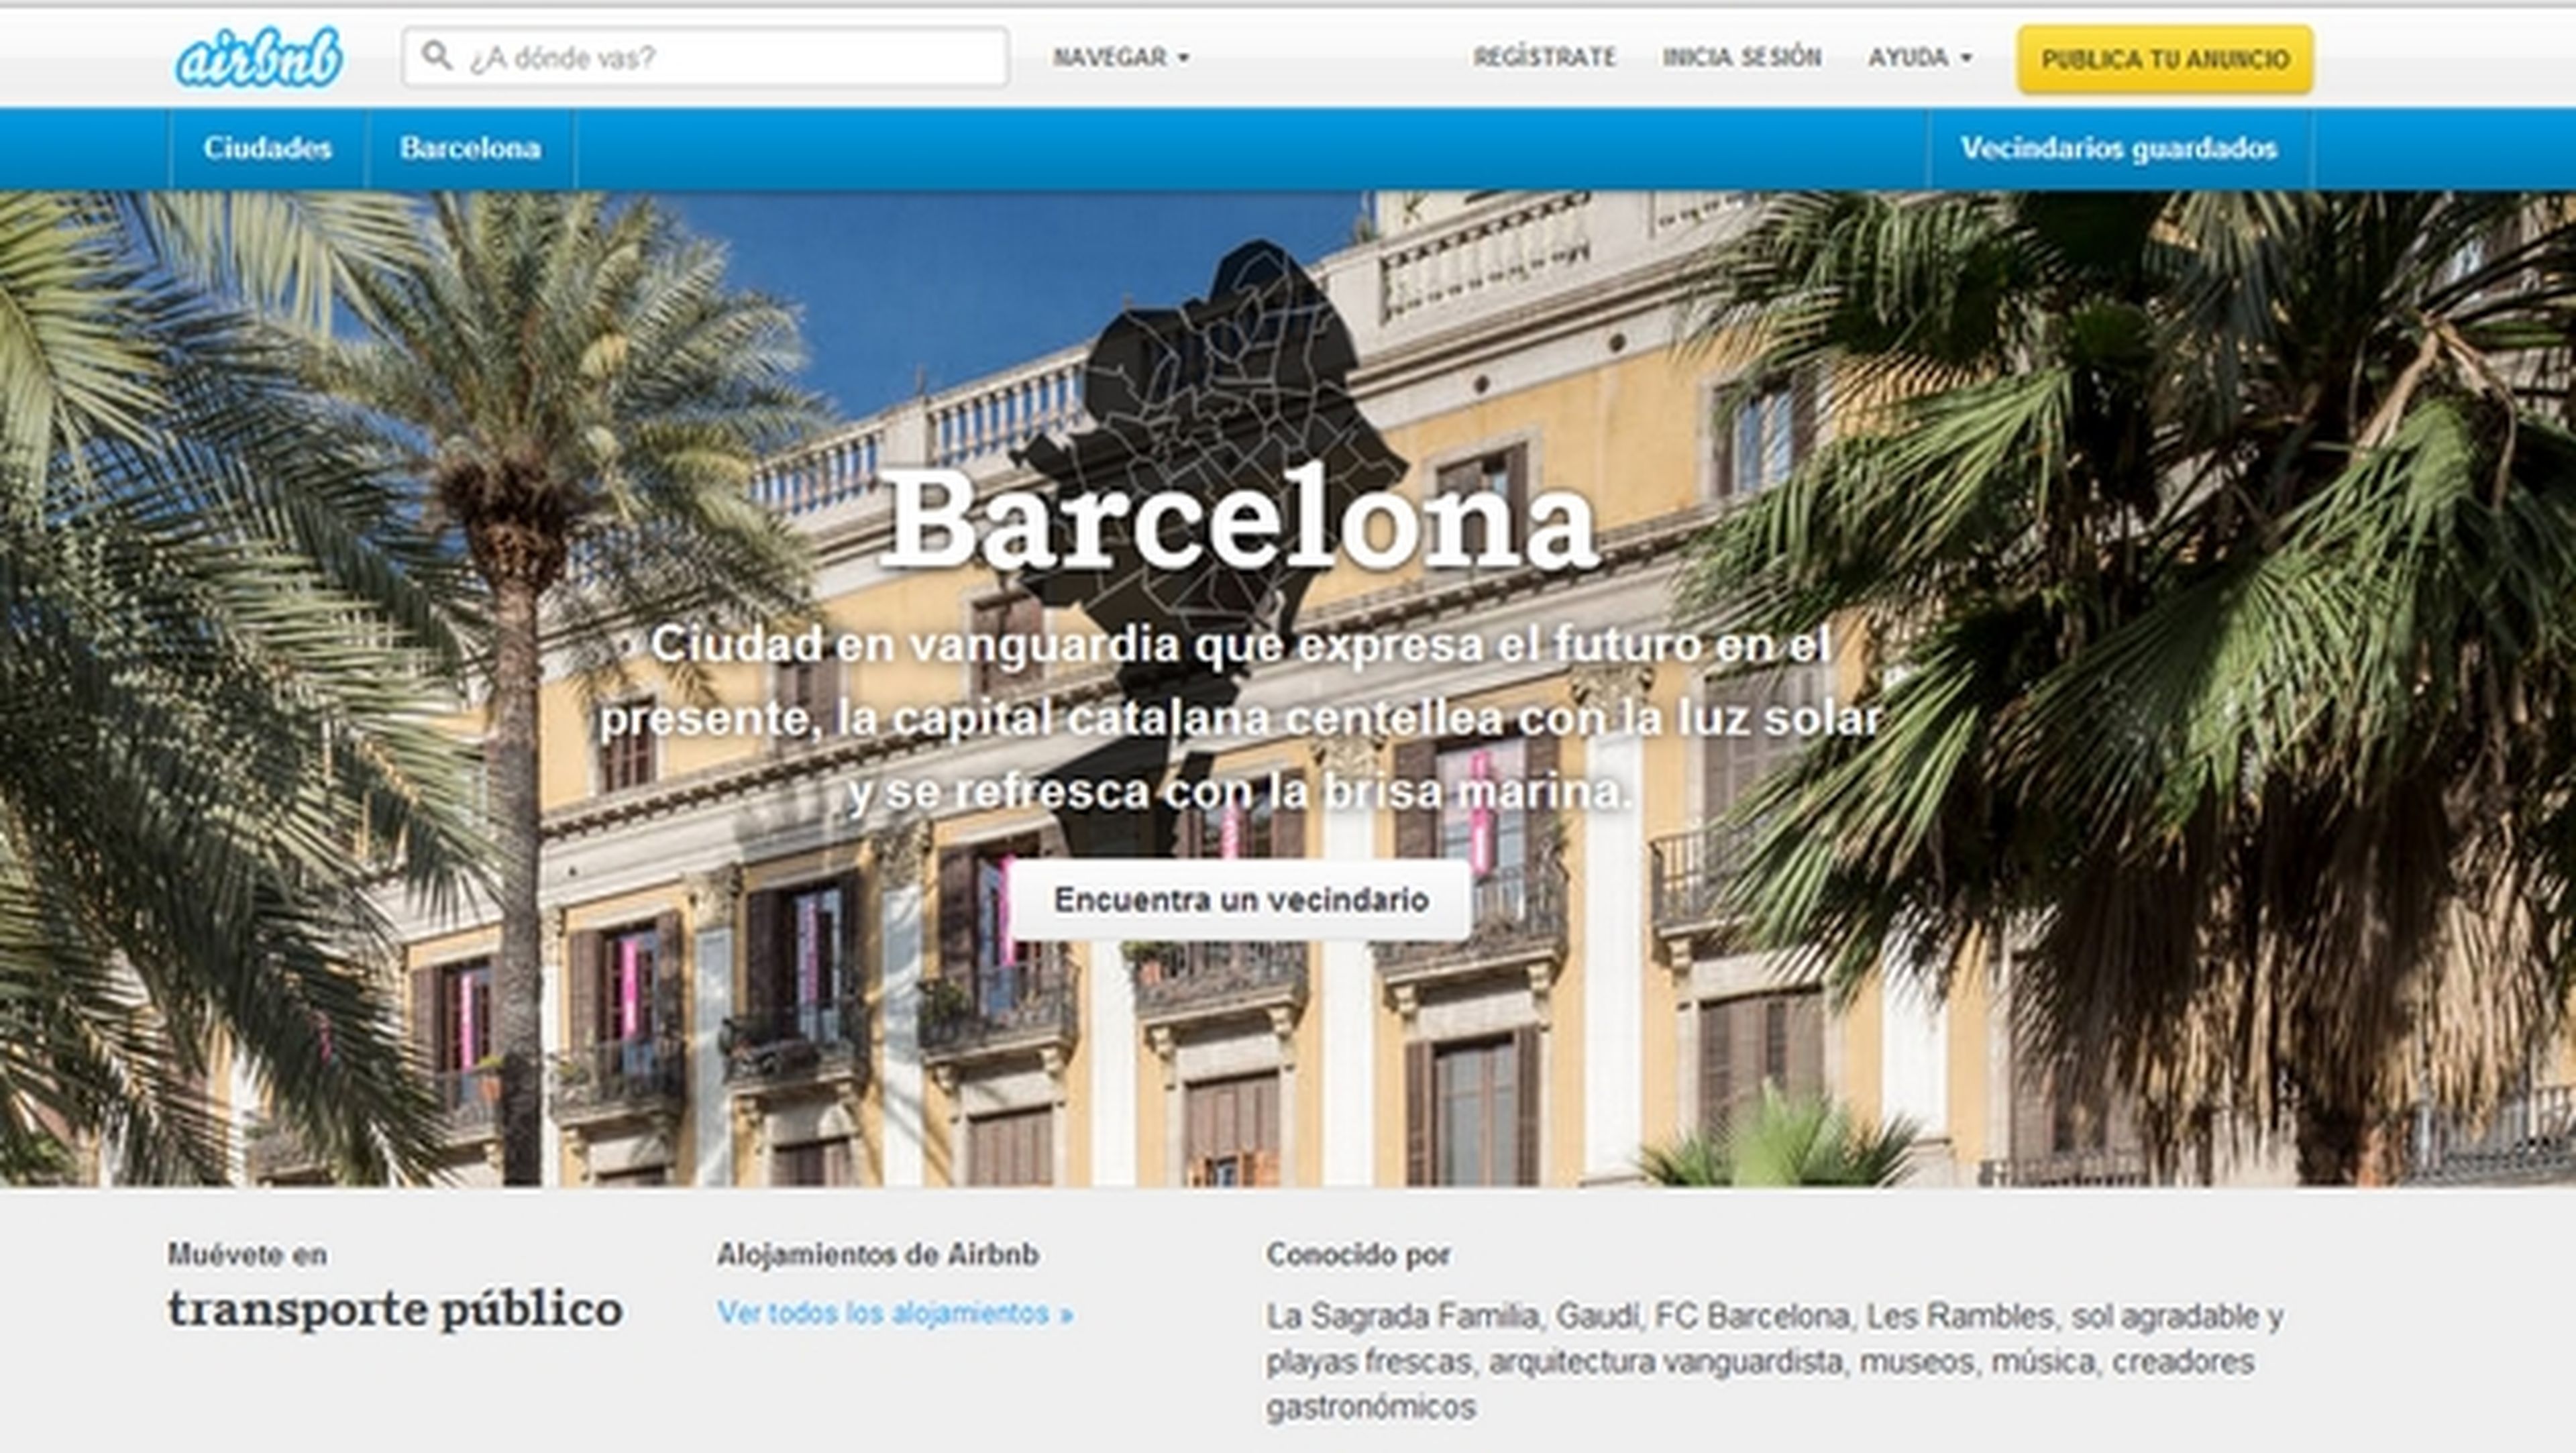 Airbnb, multada con 30.000€ por la Generalitat de Cataluña por ofrecer viviendas ilegales, al no estar en el Registro de Turismo de Cataluña.